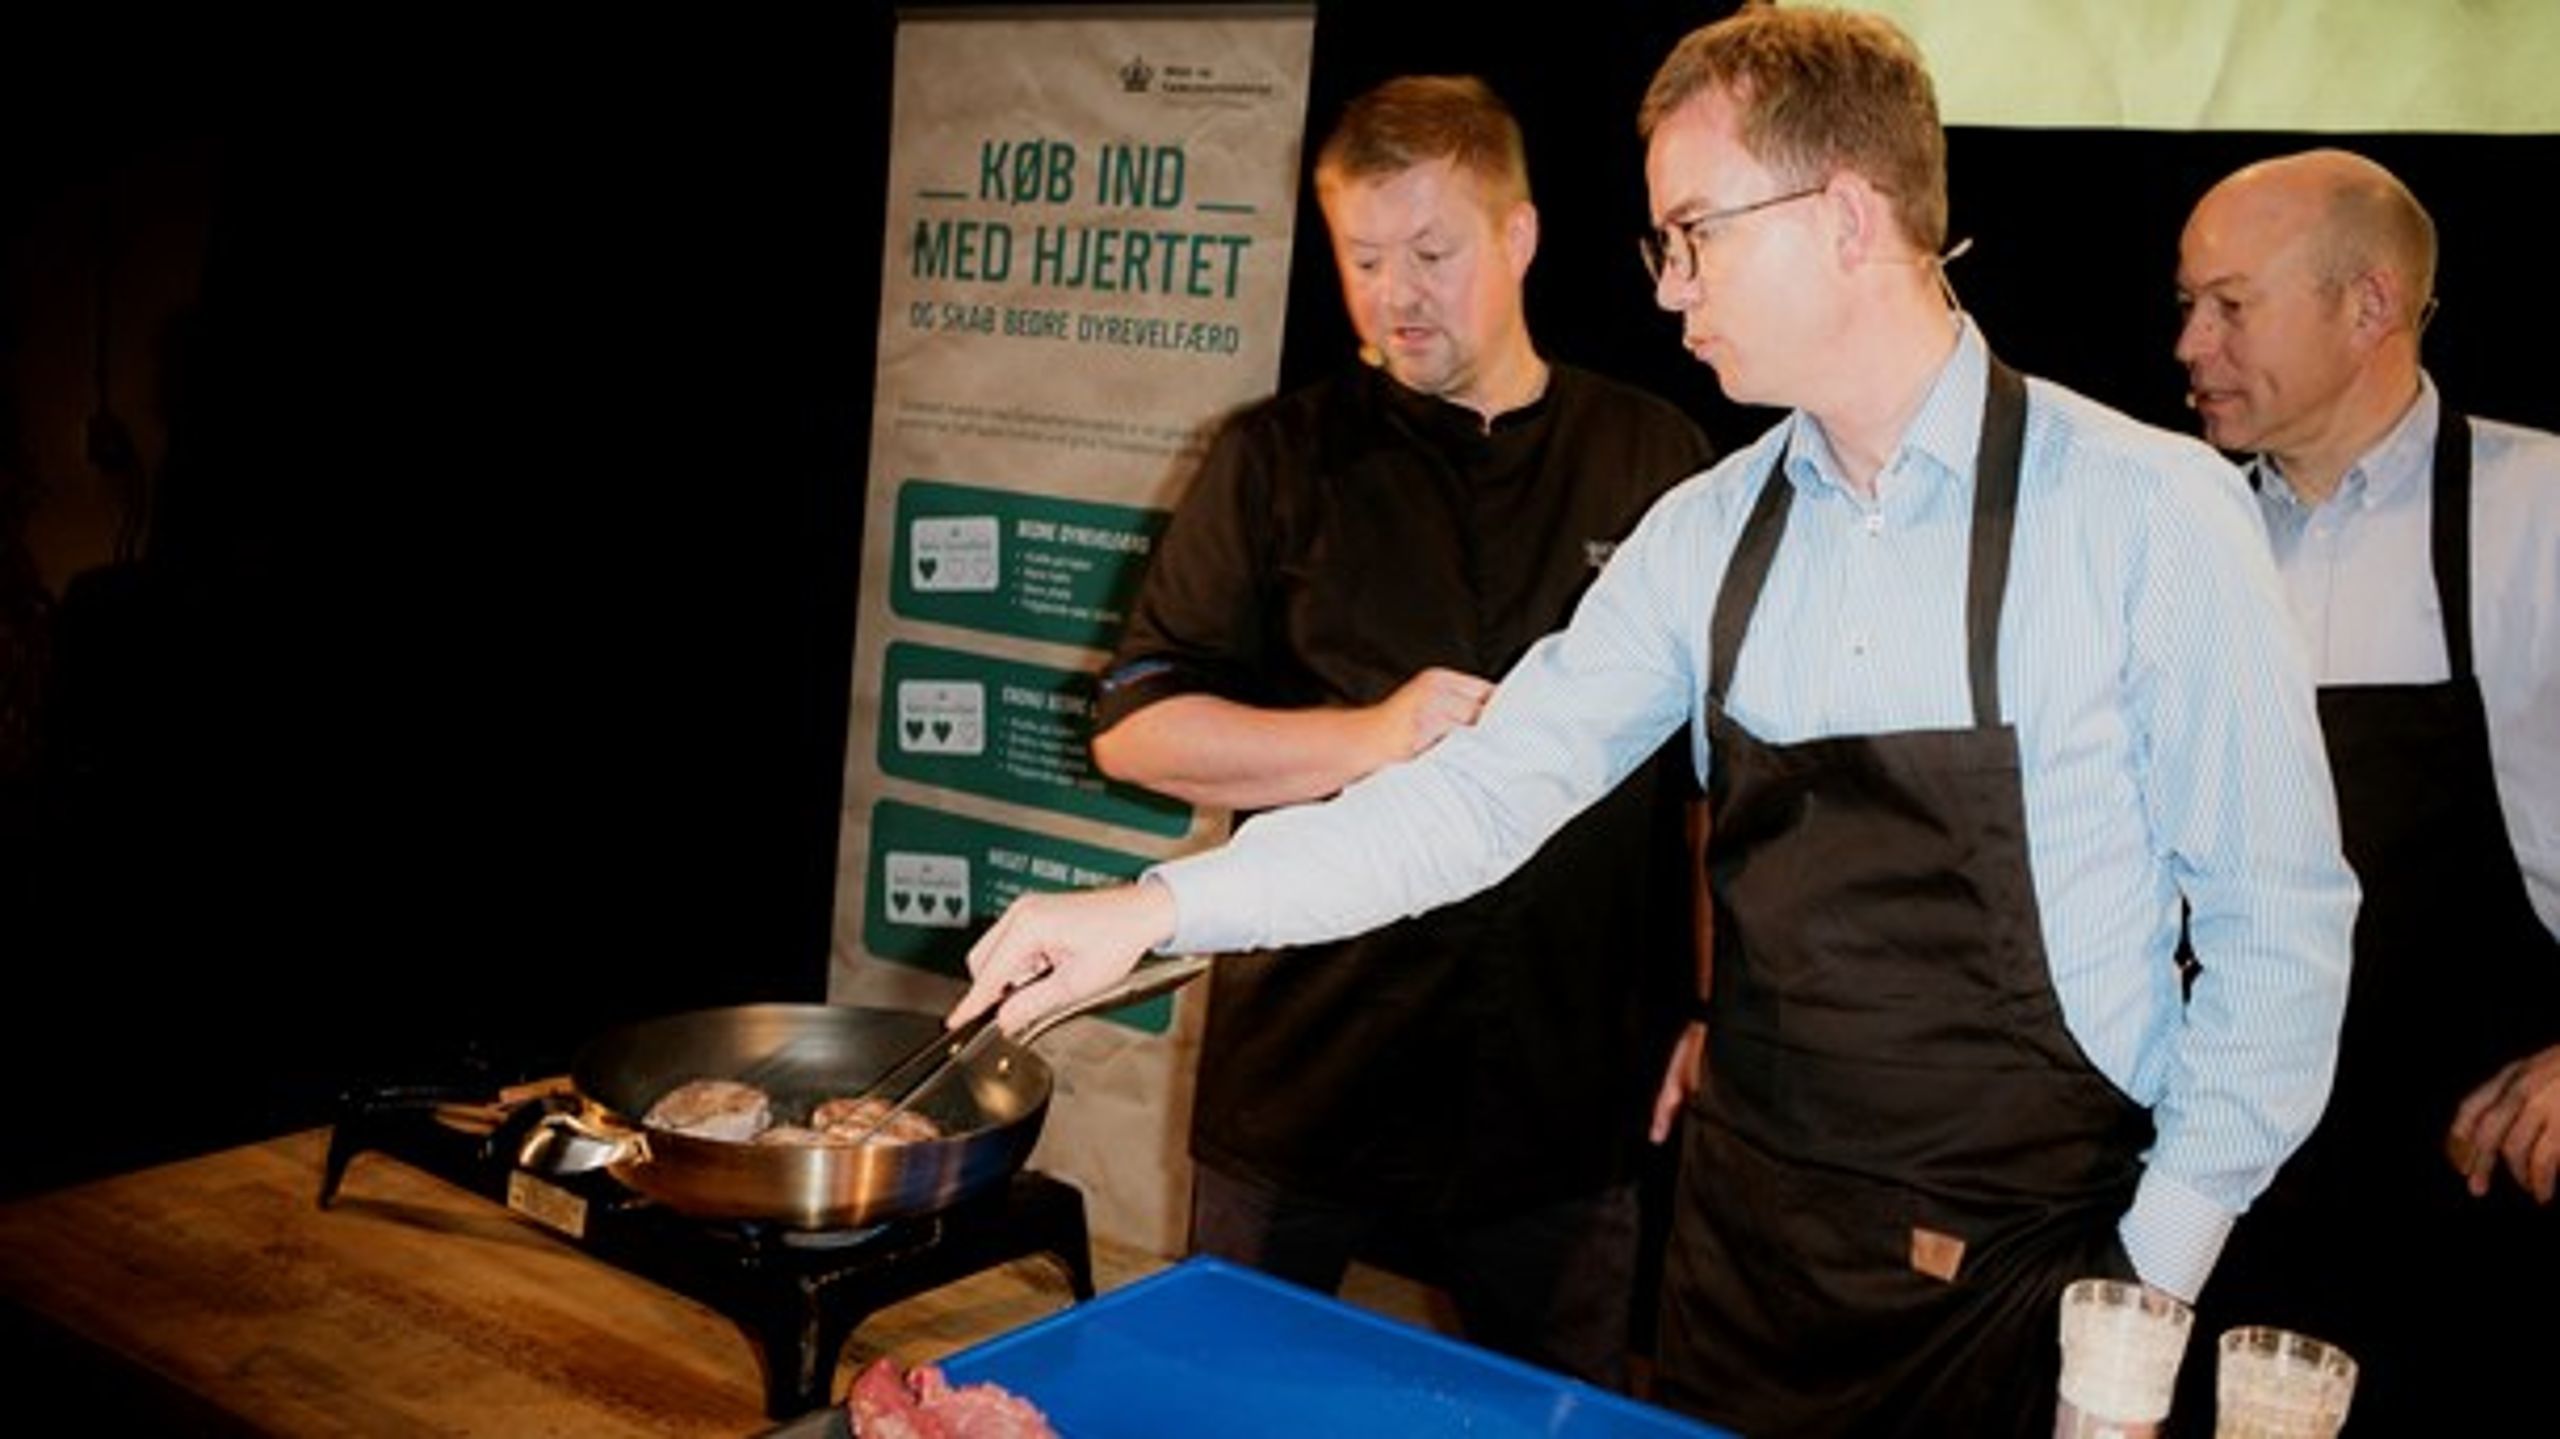 Under et presseevent&nbsp;var den kendte kok Jesper Koch inviteret med for at lave mad med det nye dyrevelfærdsmærkede svinekød. Her er det fødevareminister Esben Lunde Larsen (V), der er i aktion.